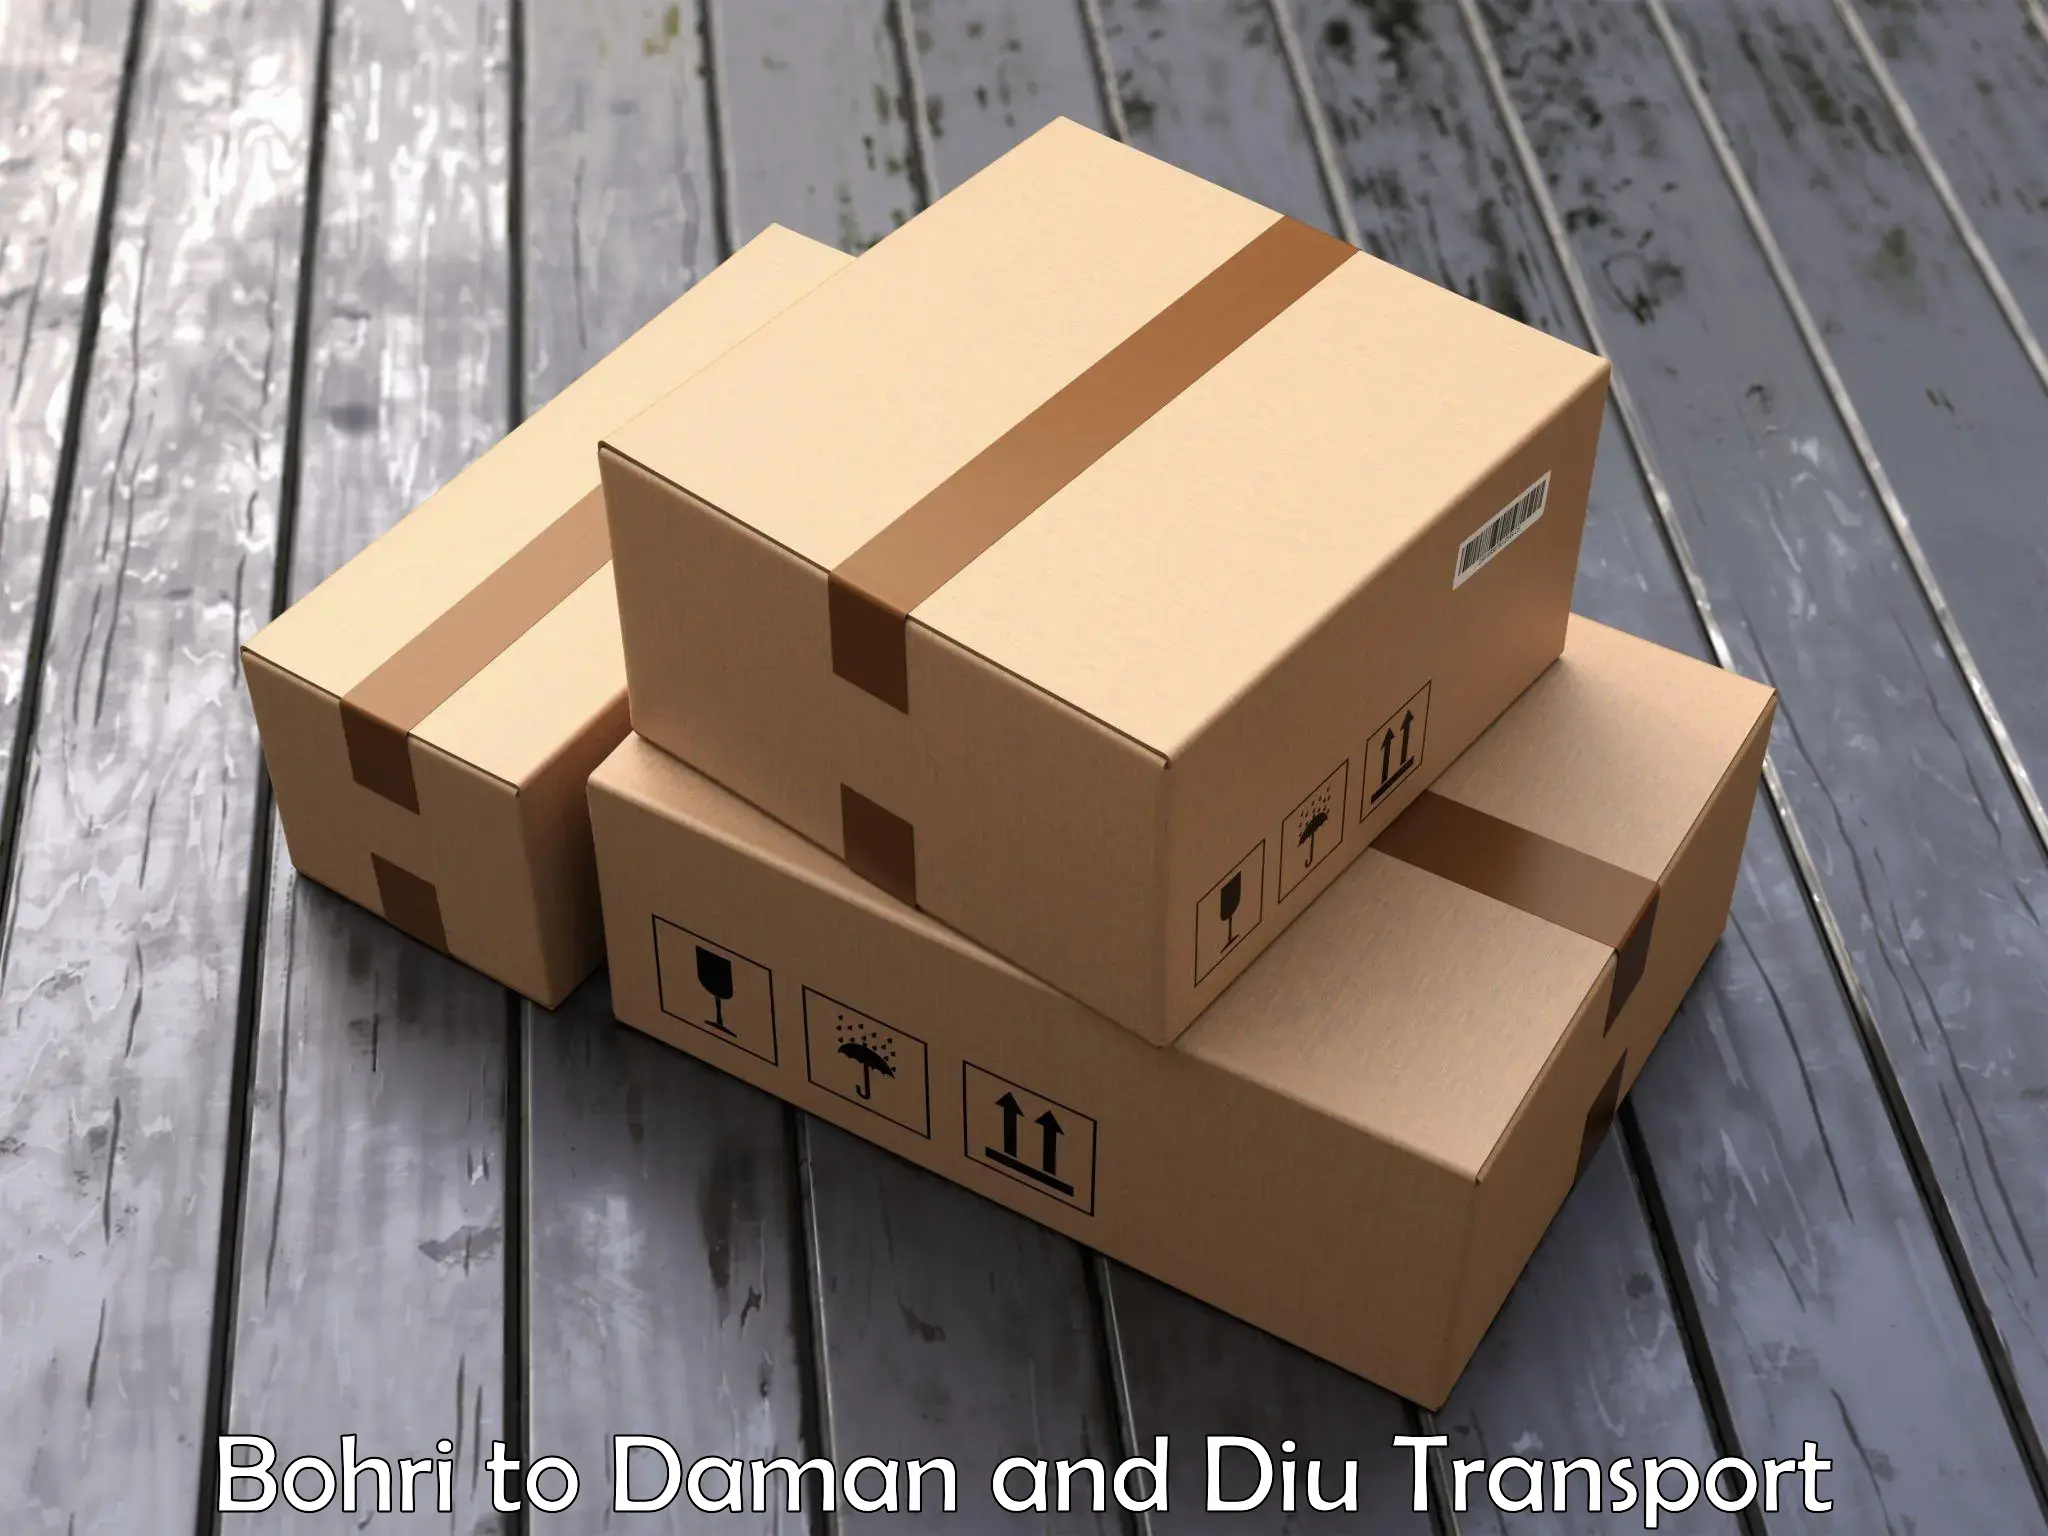 Furniture transport service Bohri to Diu